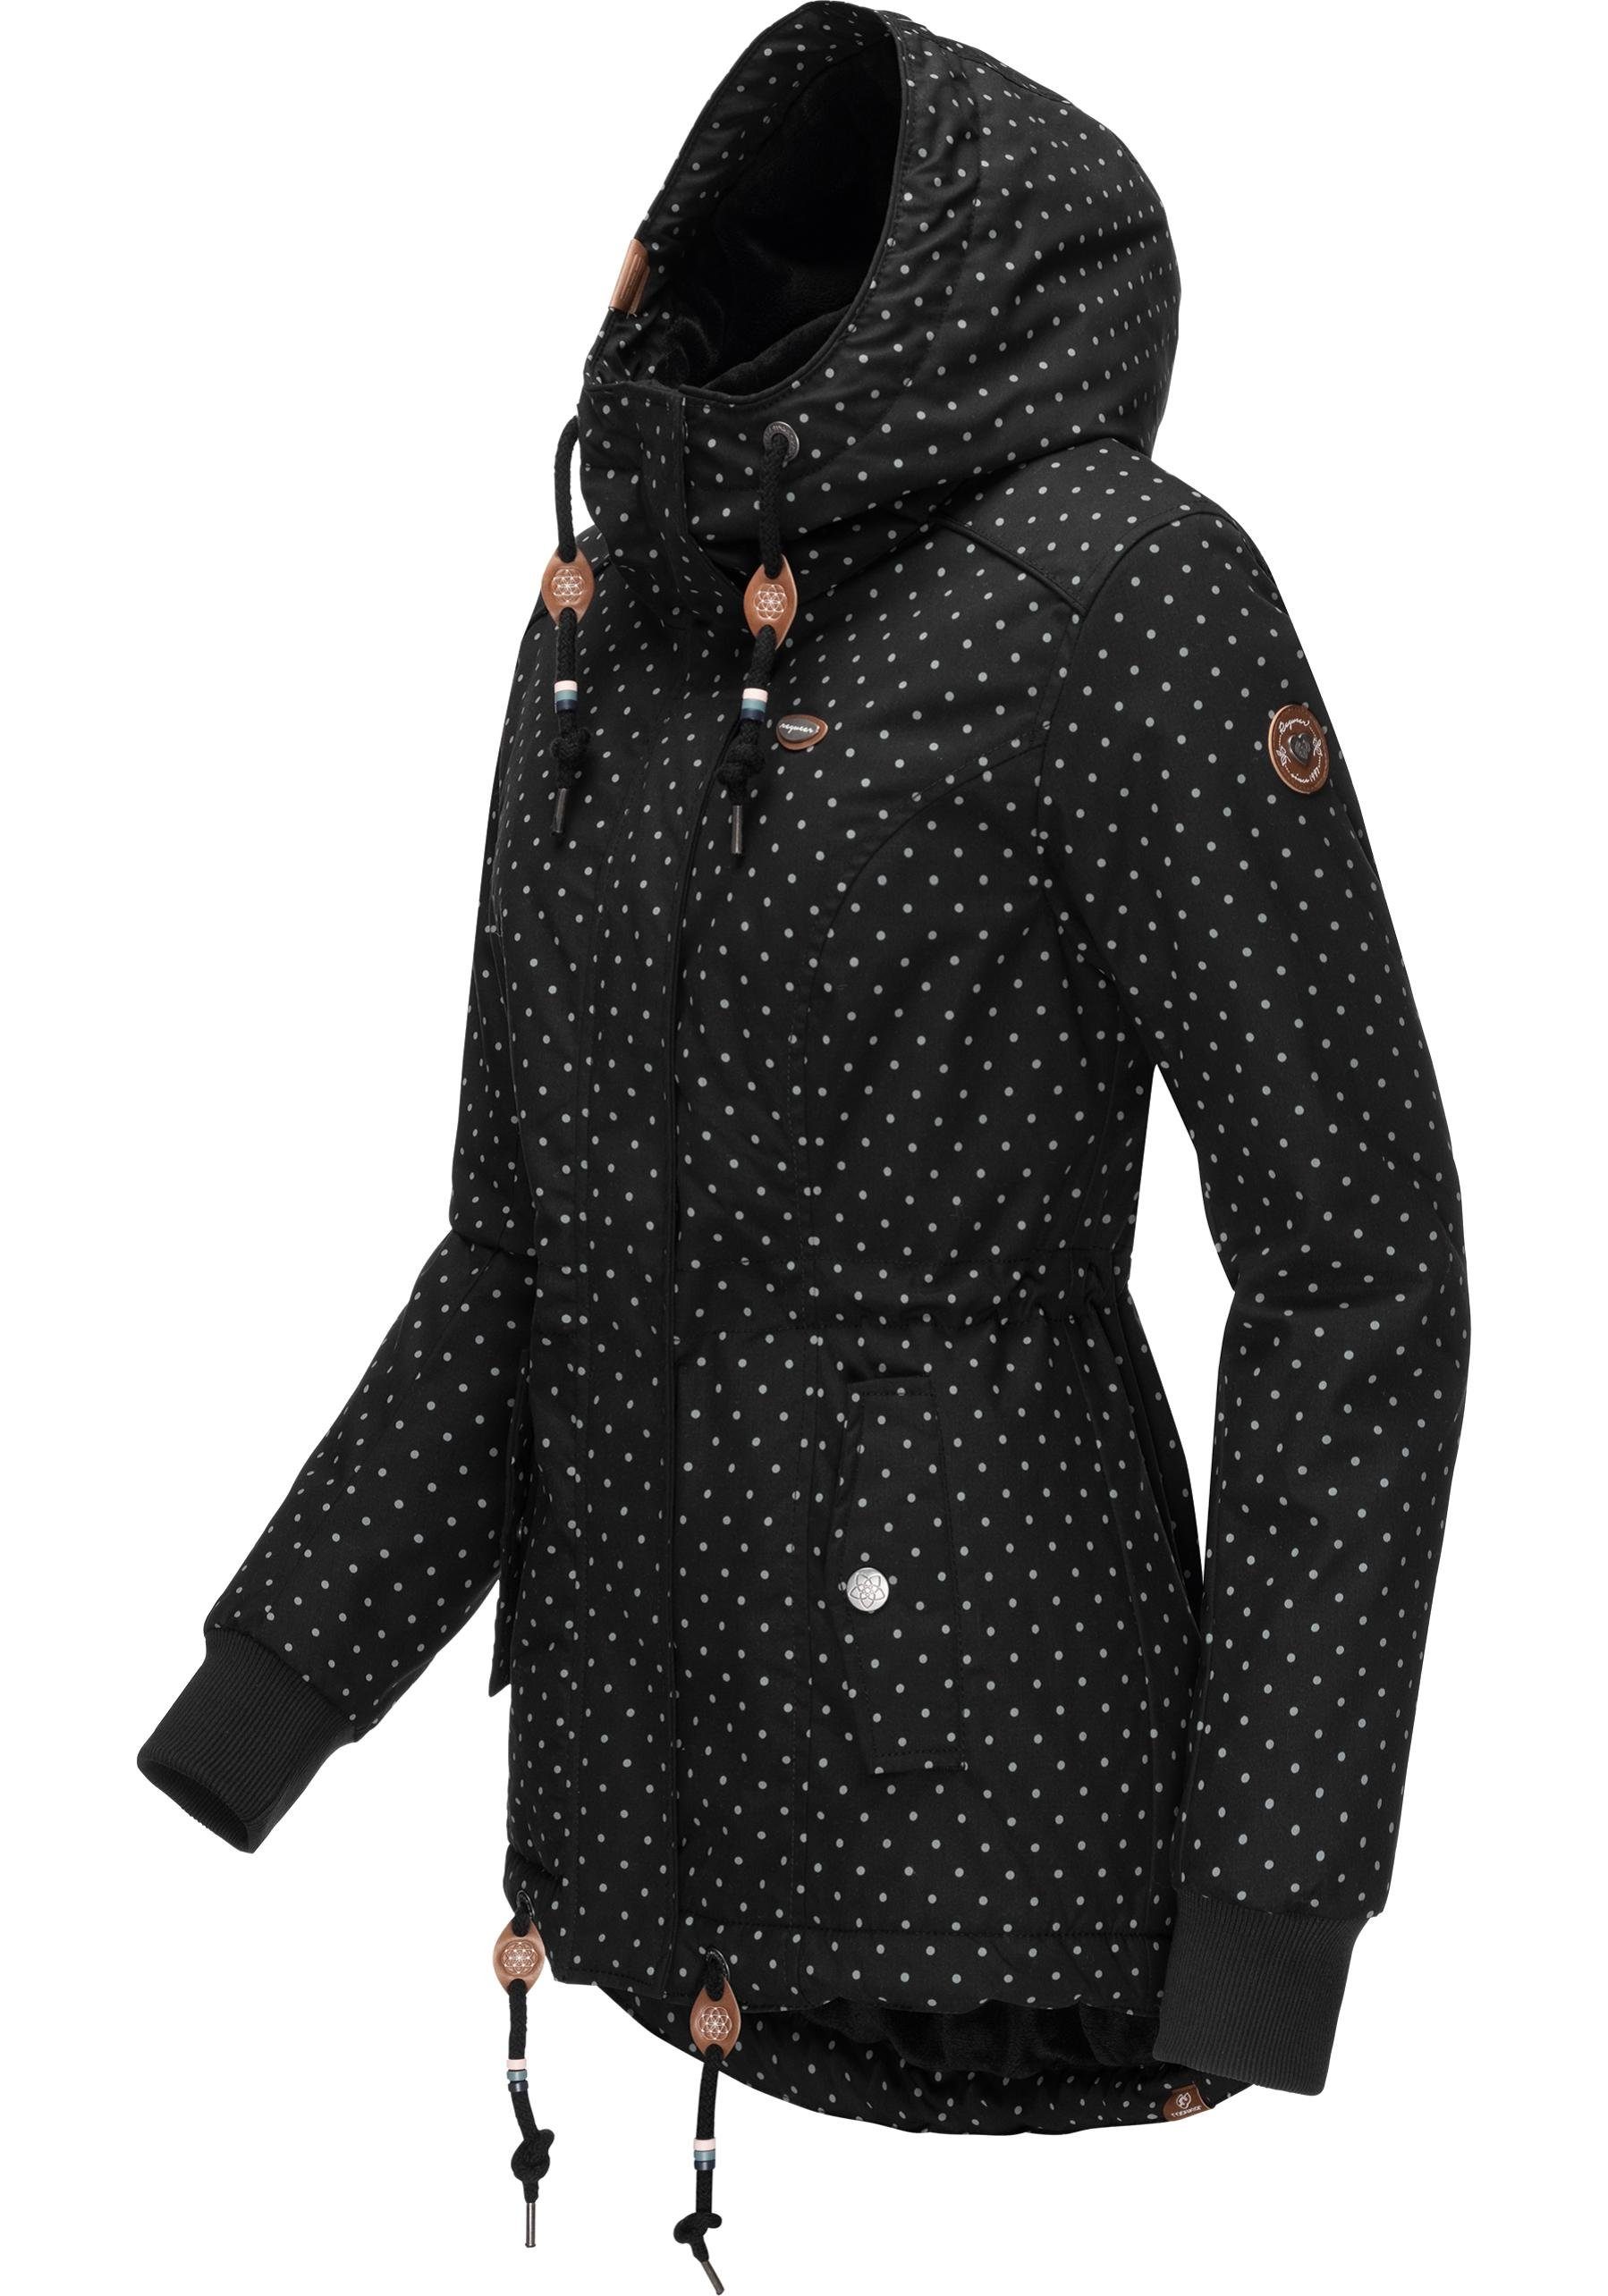 Outdoorjacke Winter black Dots Winterjacke mit Kapuze Ragwear Intl. stylische Danka